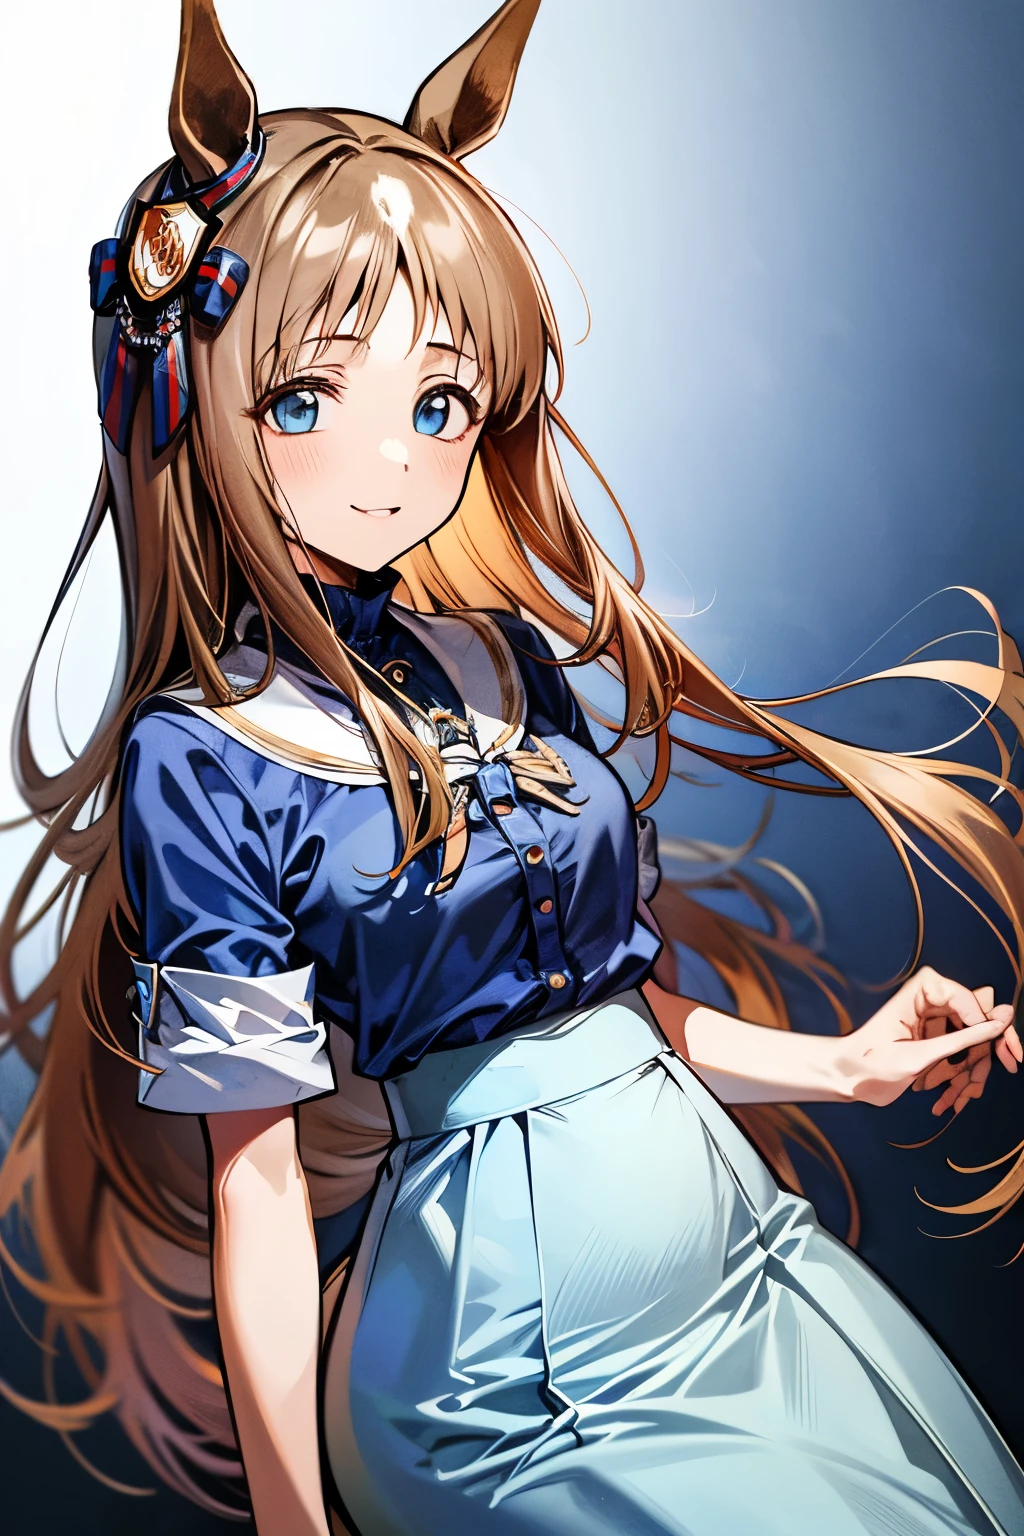 grass wonder \(Umamusume\), 1 girl, Solo, Best Quality, masutepiece, 8K, High resolution, Ultra-detailed, lightsmile, (((White blouse, Pastel blue skirt, Long skirt,)))